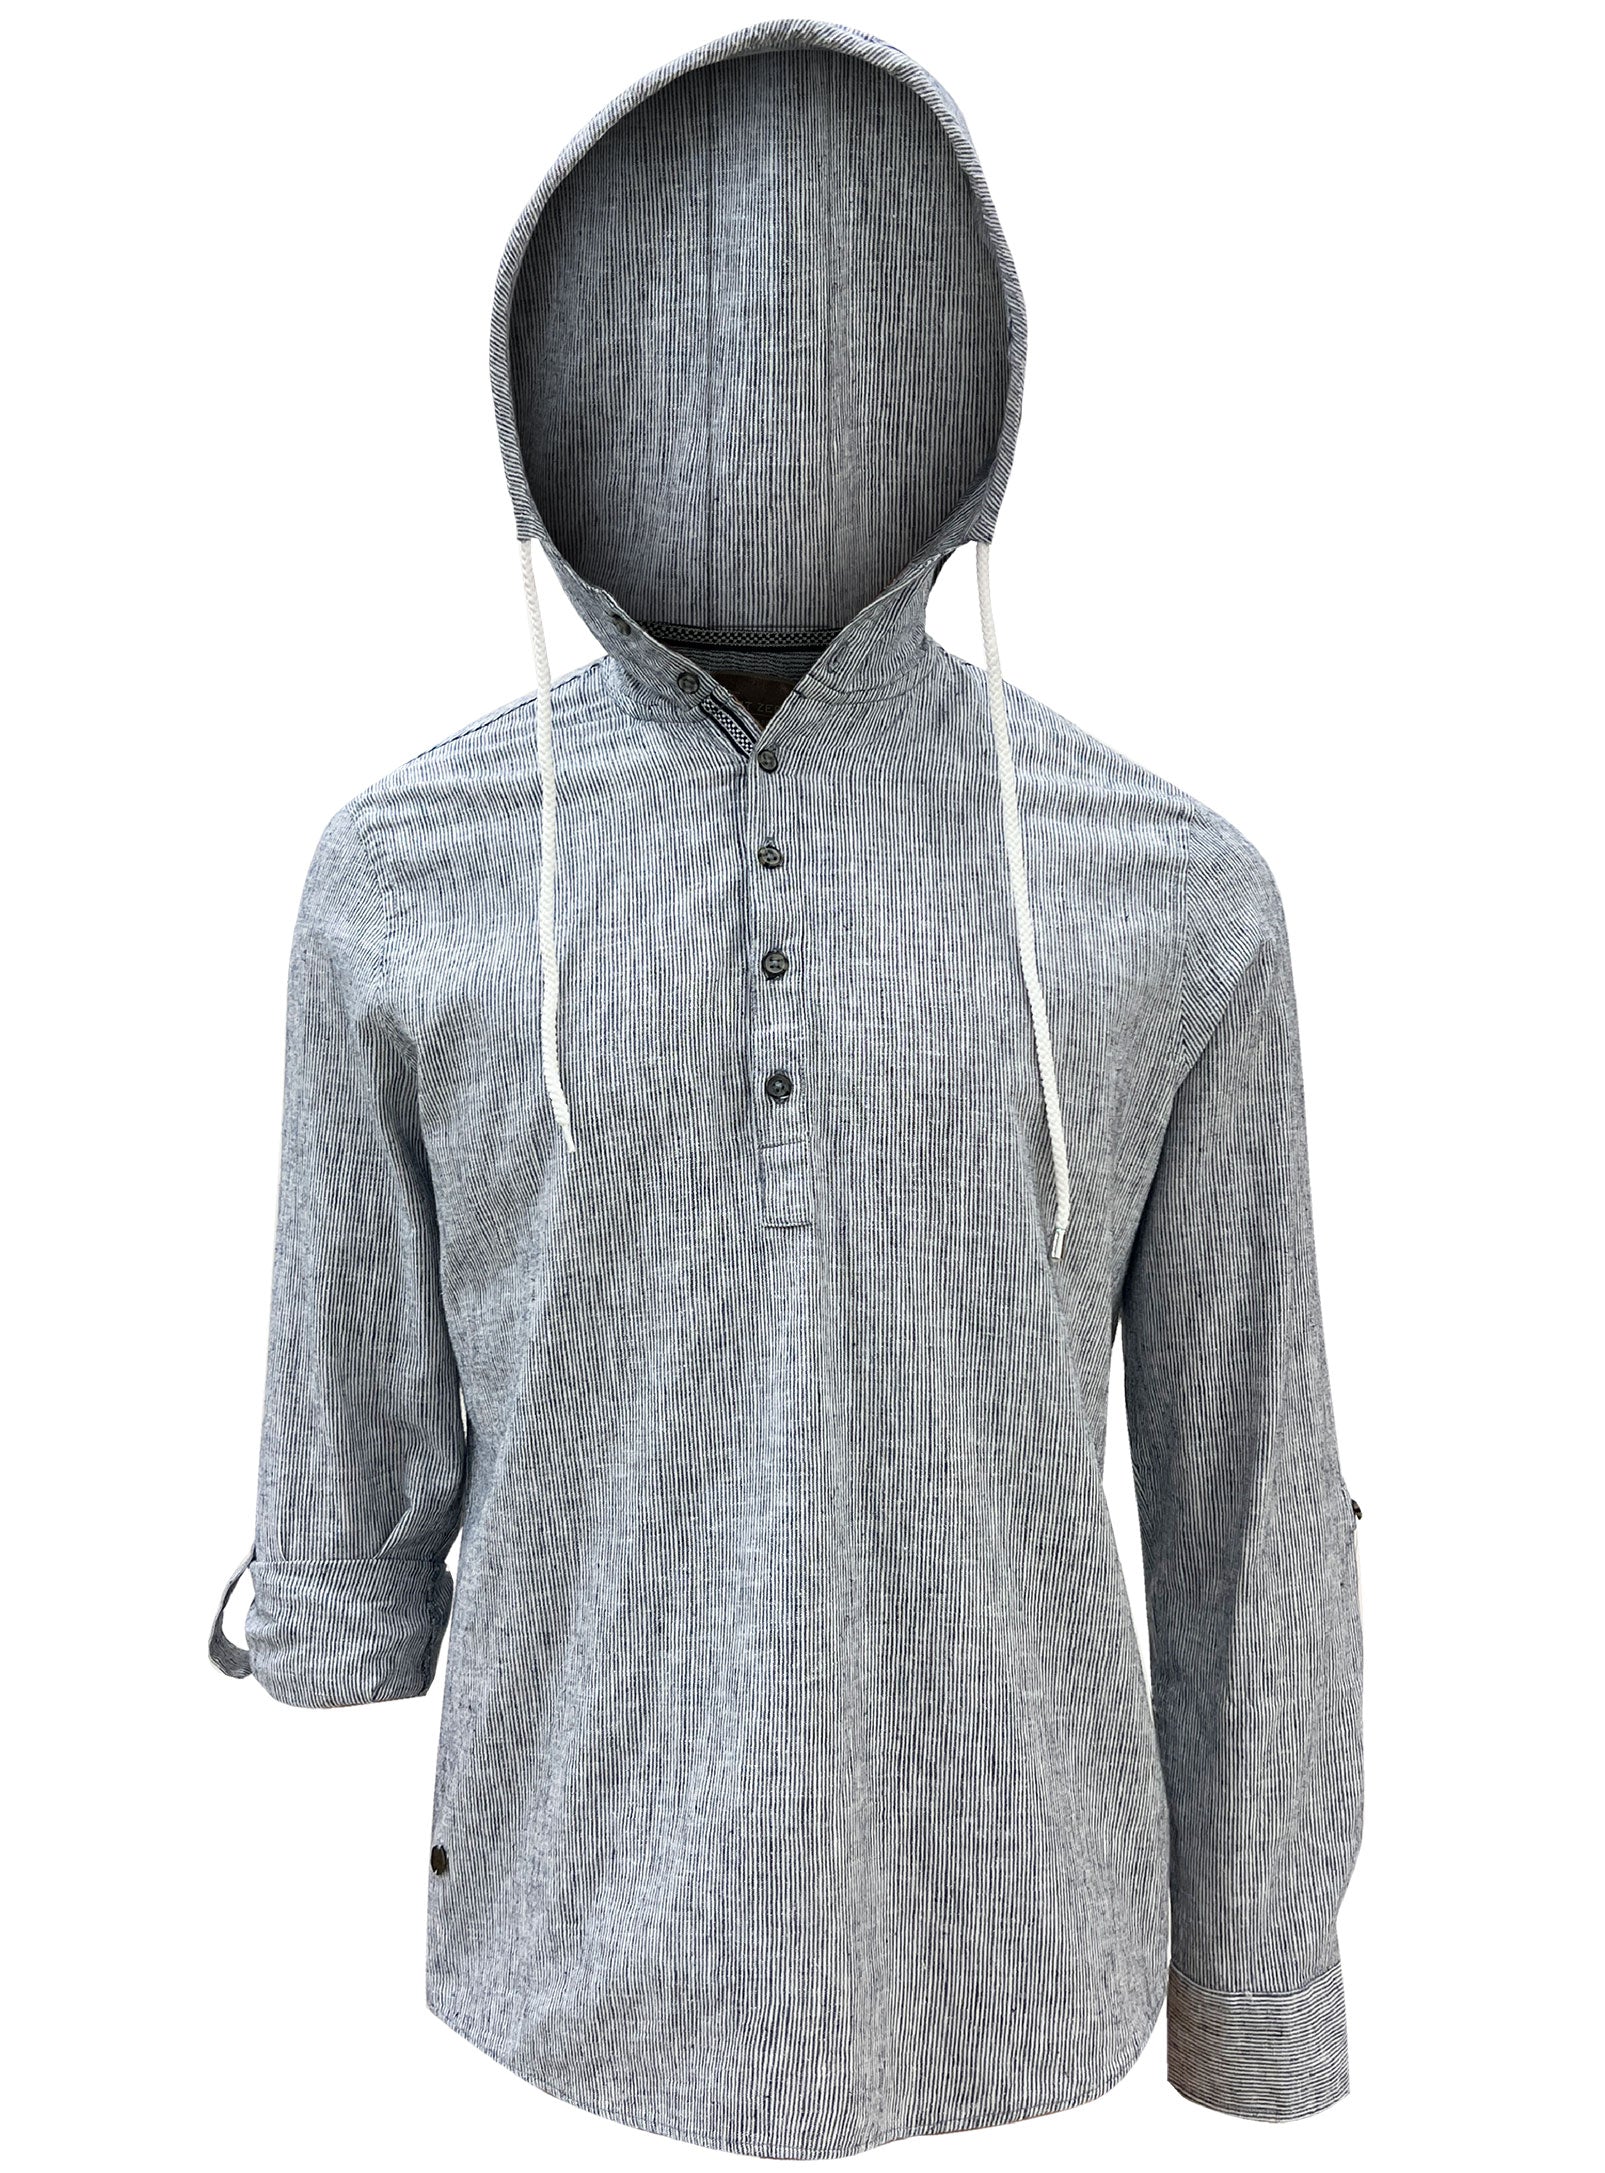 DENNIS| Hooded linen cotton striped shirt